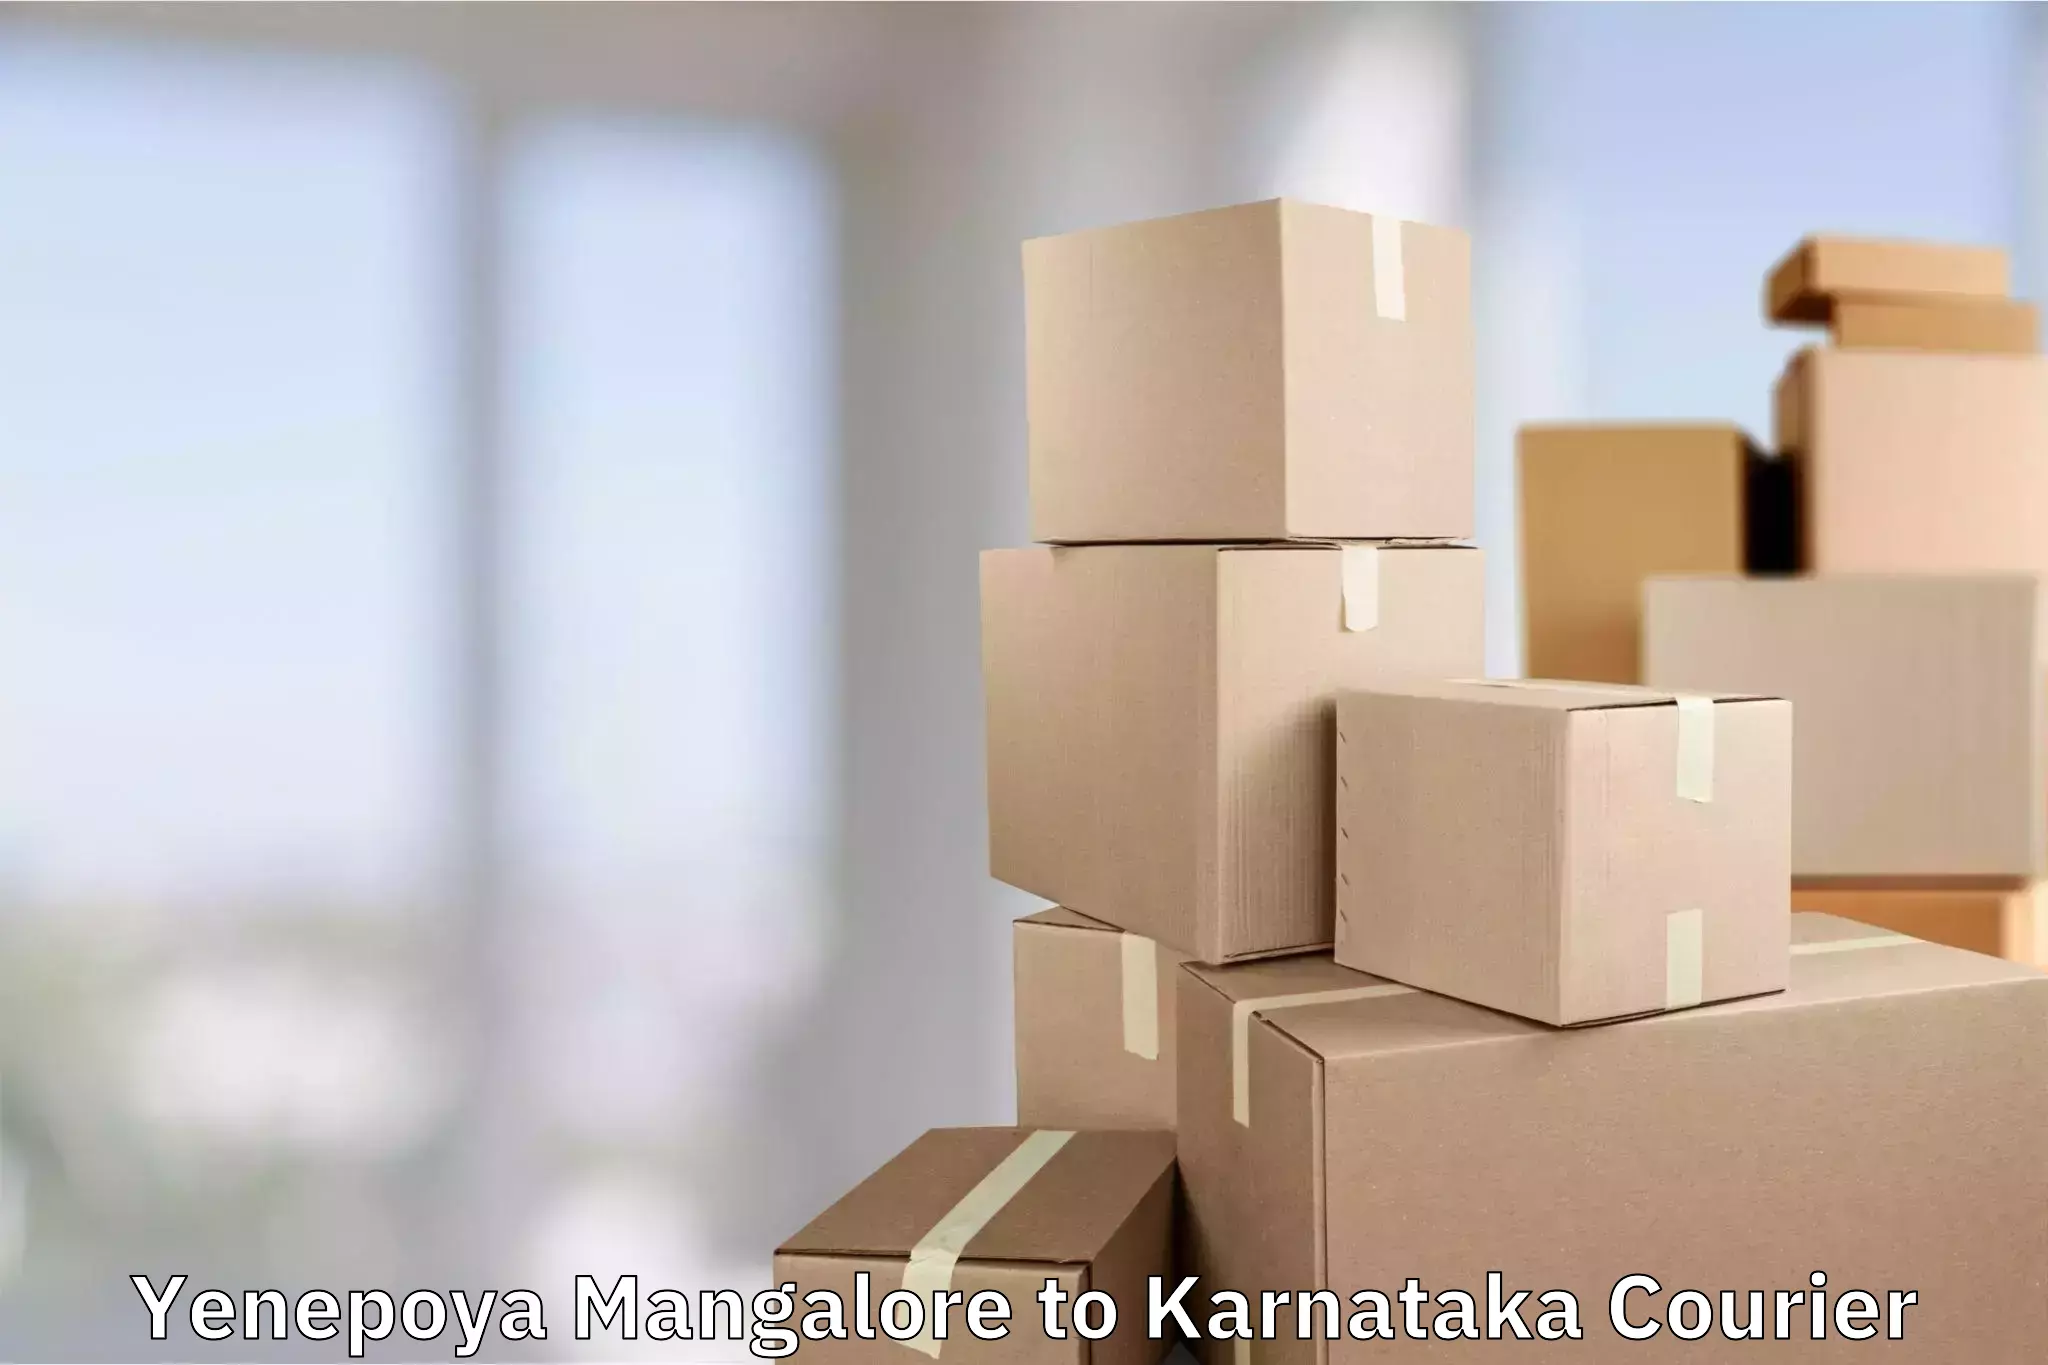 Hassle-free luggage shipping Yenepoya Mangalore to Karnataka